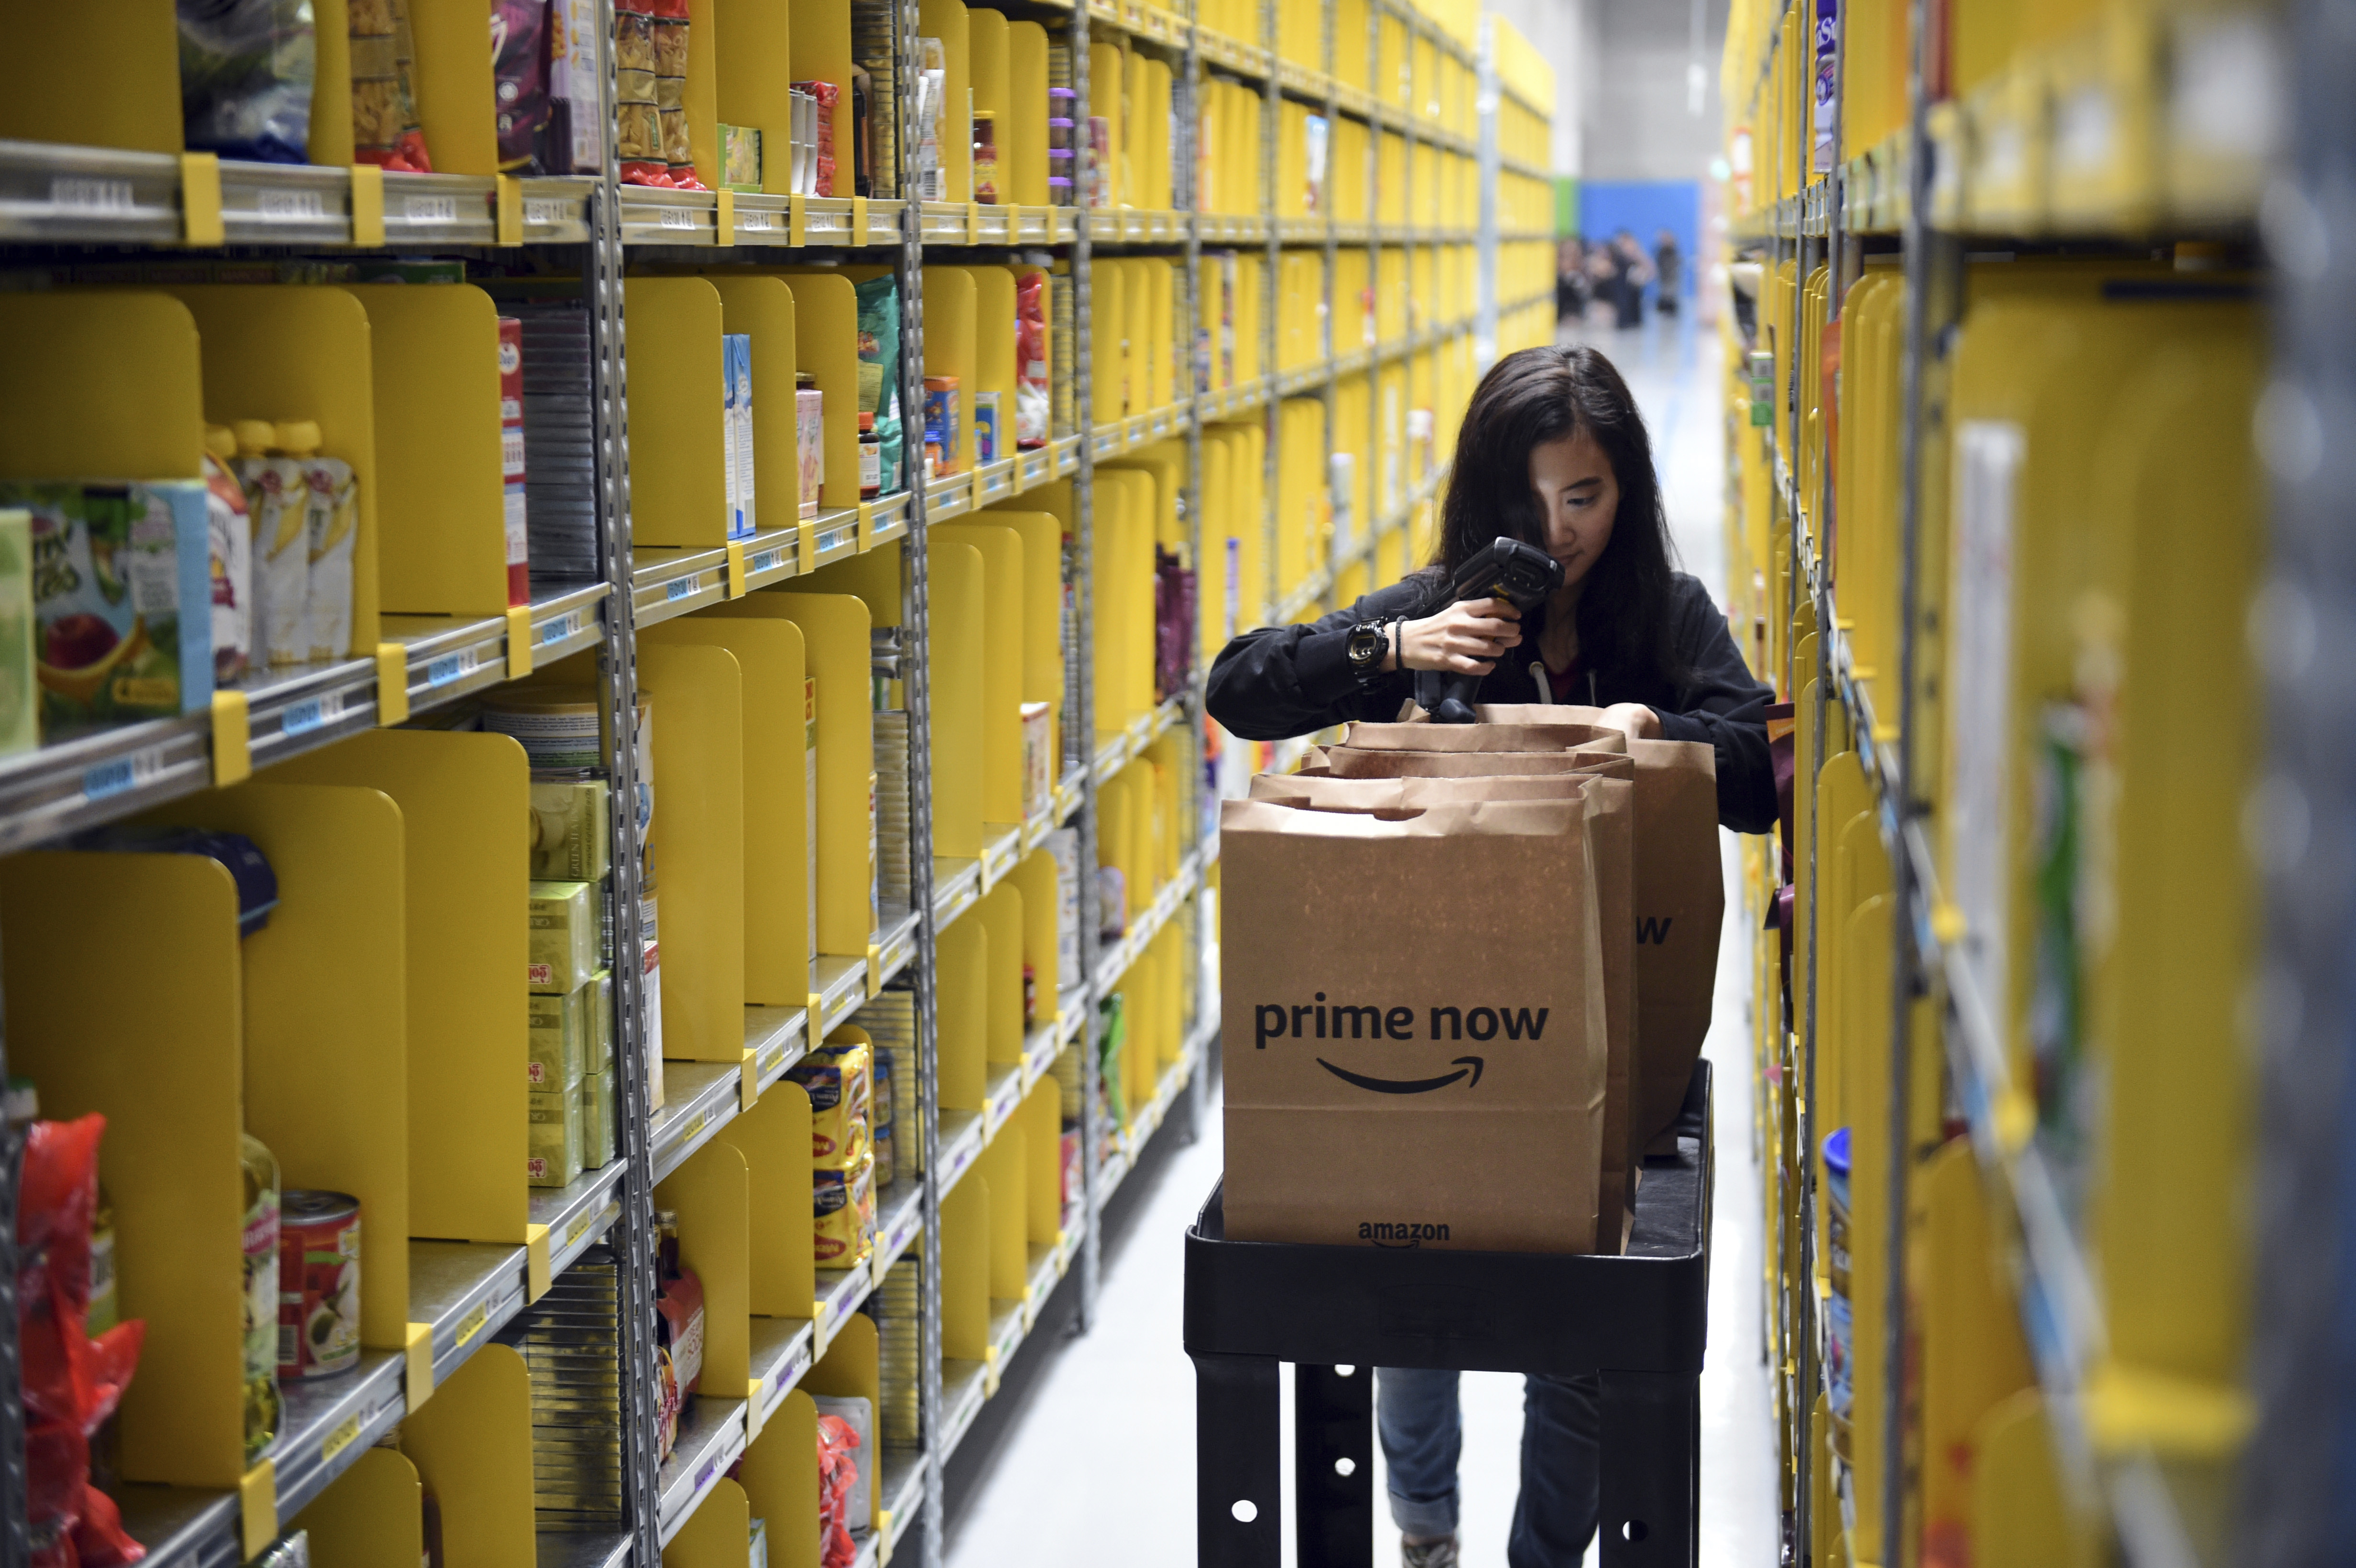 An Amazon Prime Now warehouse.